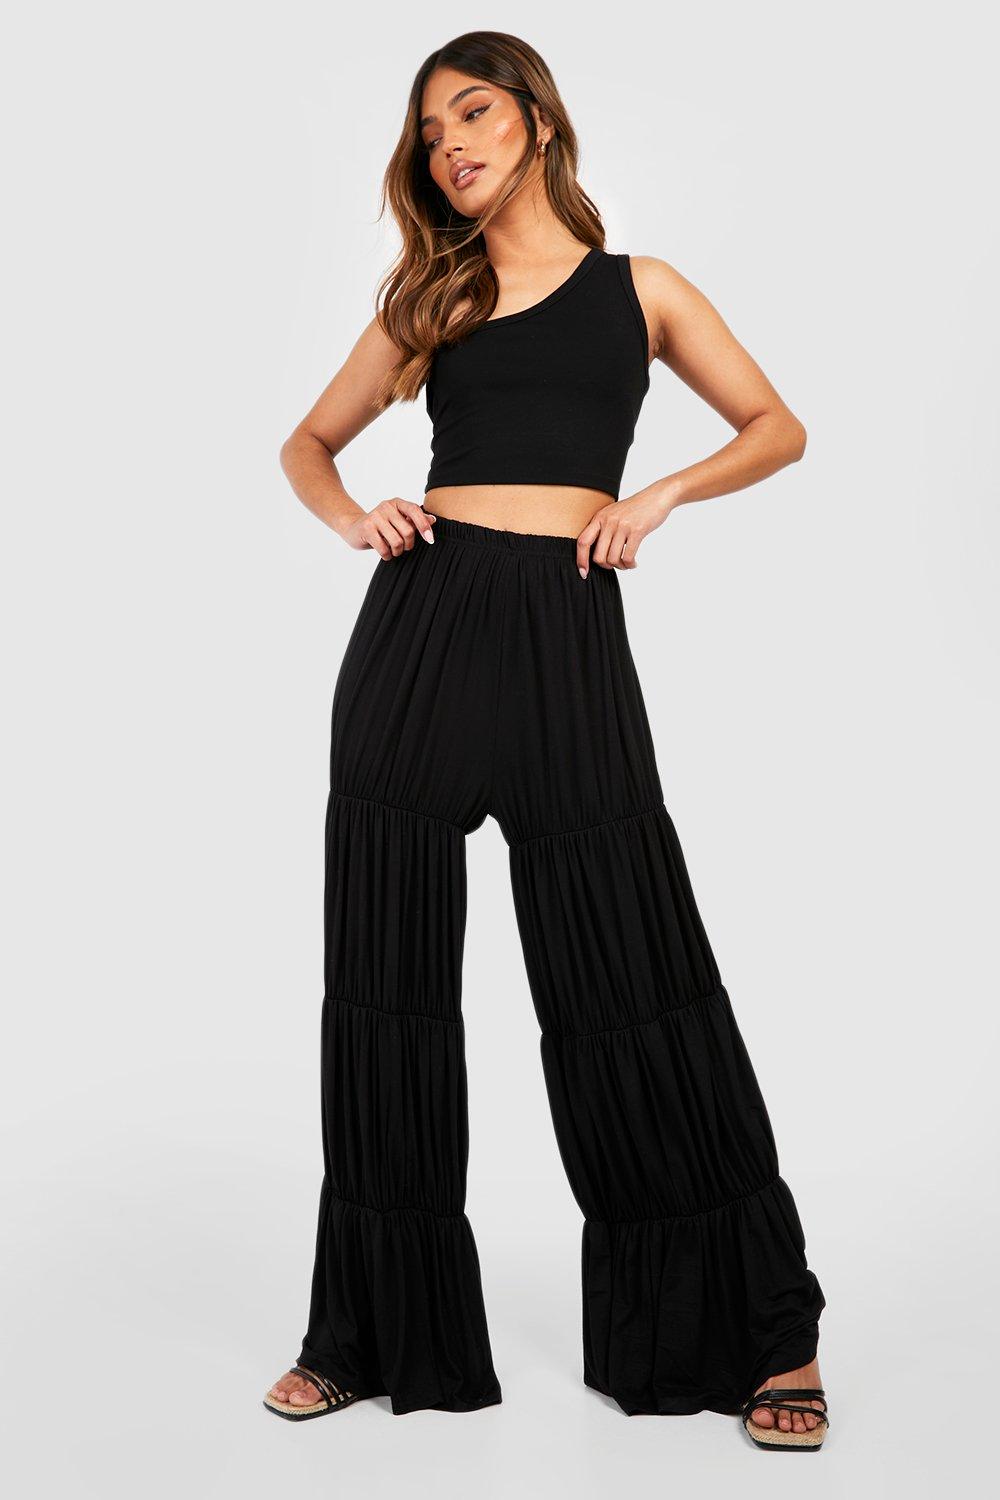 Pantalon large uni taille élastique froncée femme - Noir